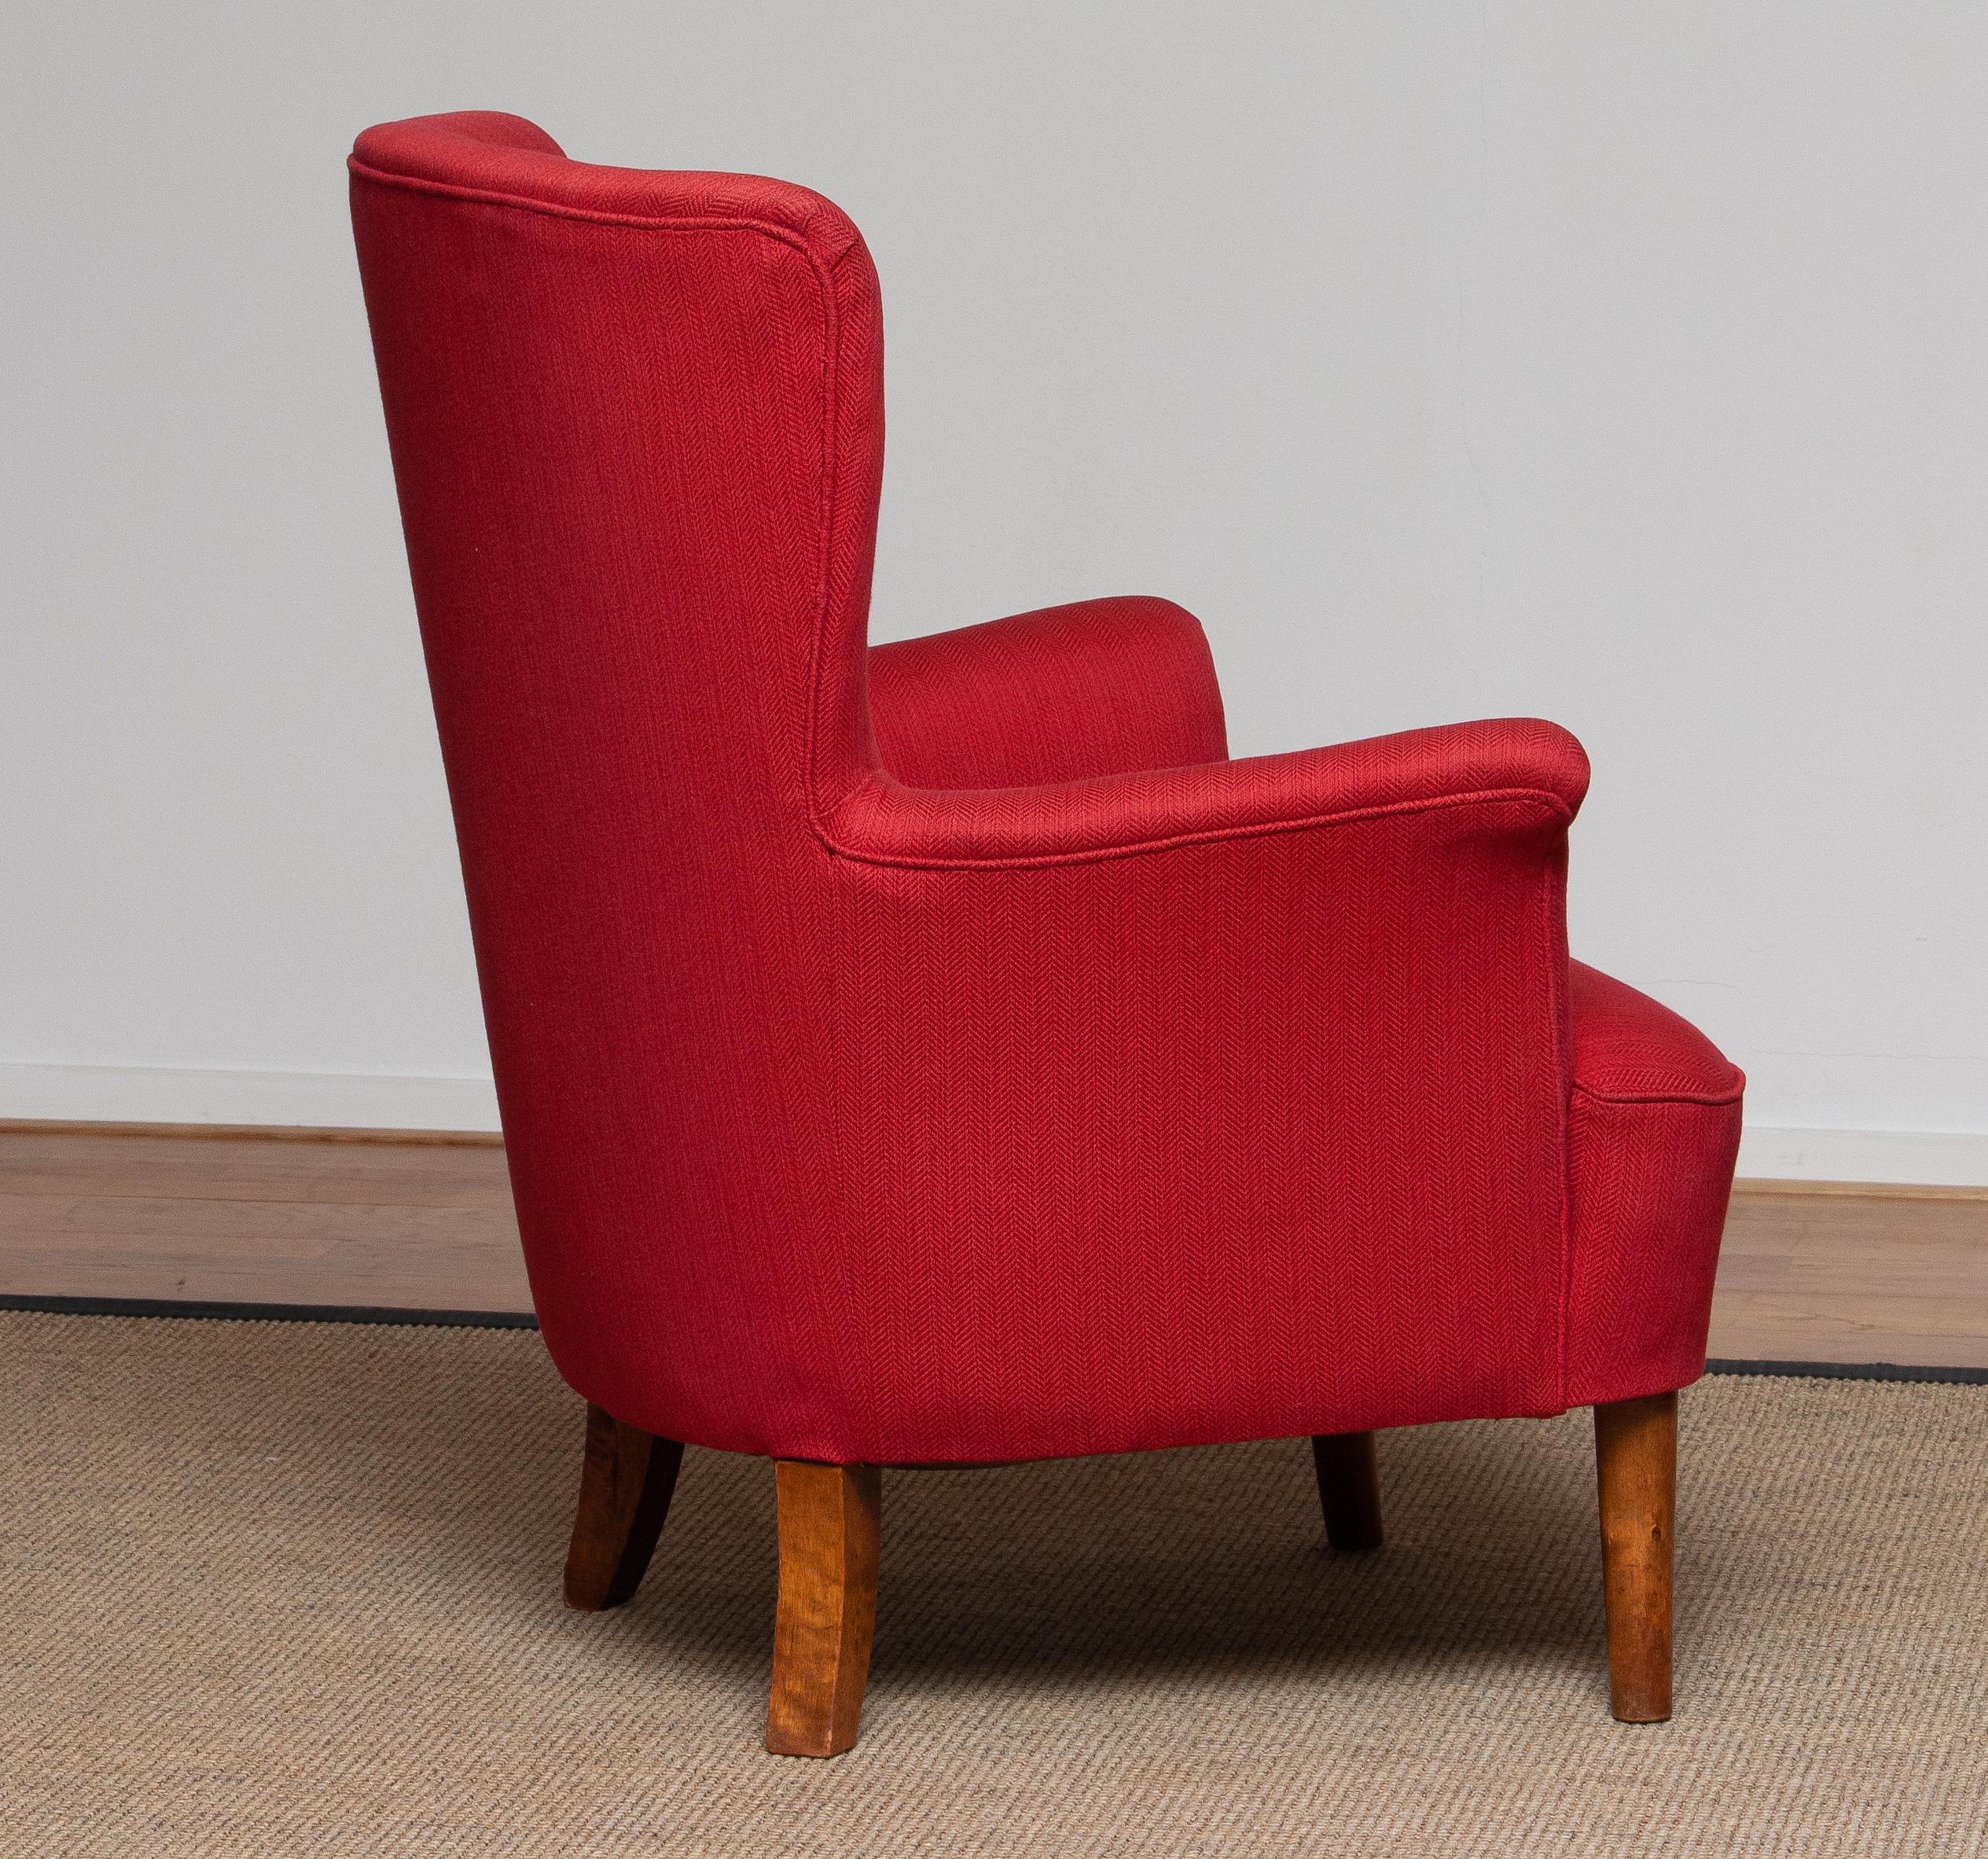 1940s, Fuchsia Easy or Lounge Chair by Carl Malmsten for Oh Sjogren, Sweden 6